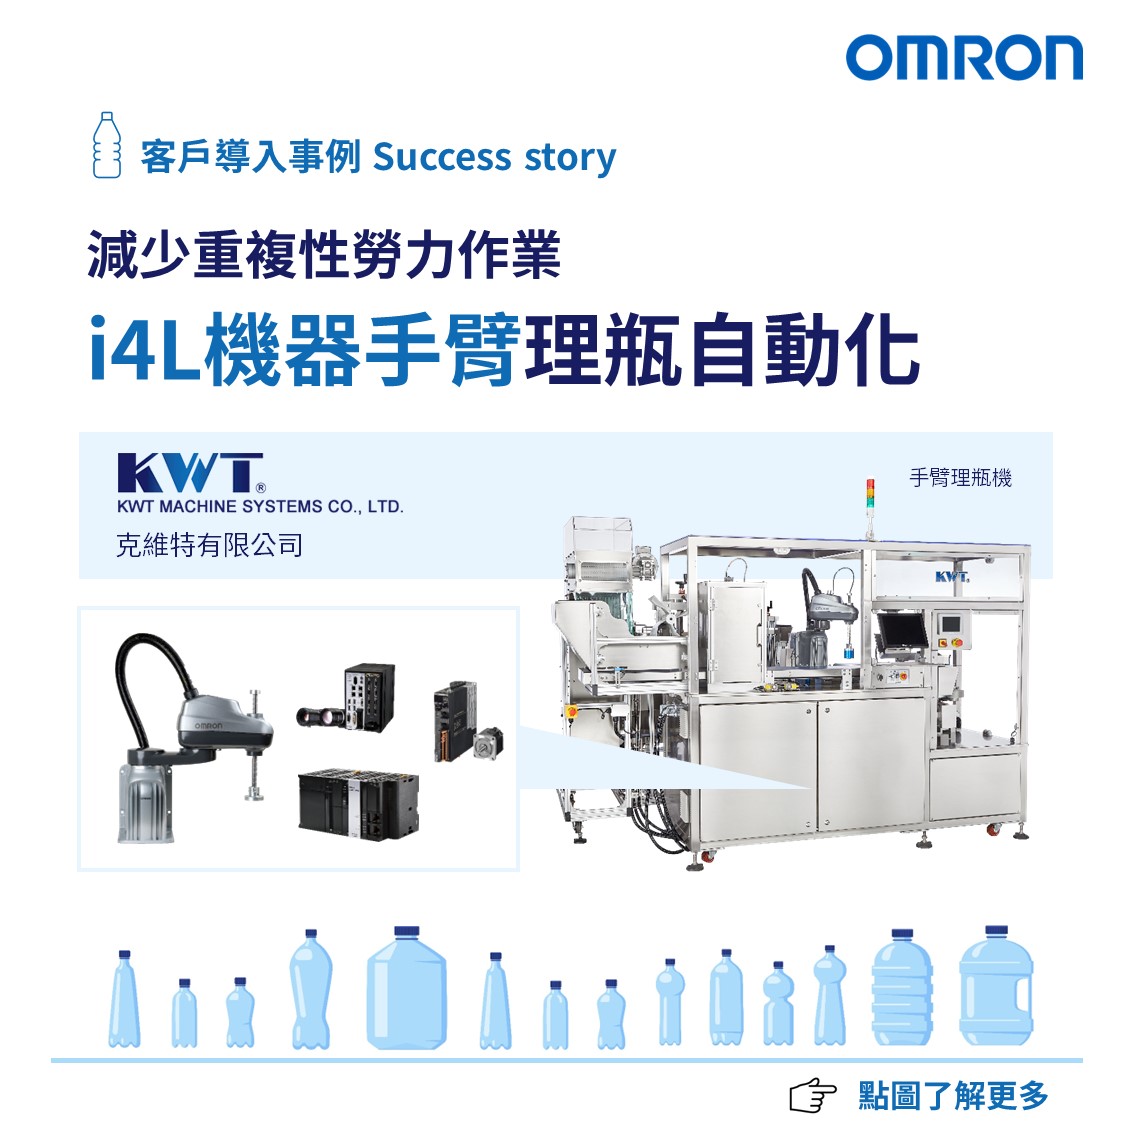 使用由 OMRON 提供支援的 KWT 機器人理瓶機體驗自動化的未來